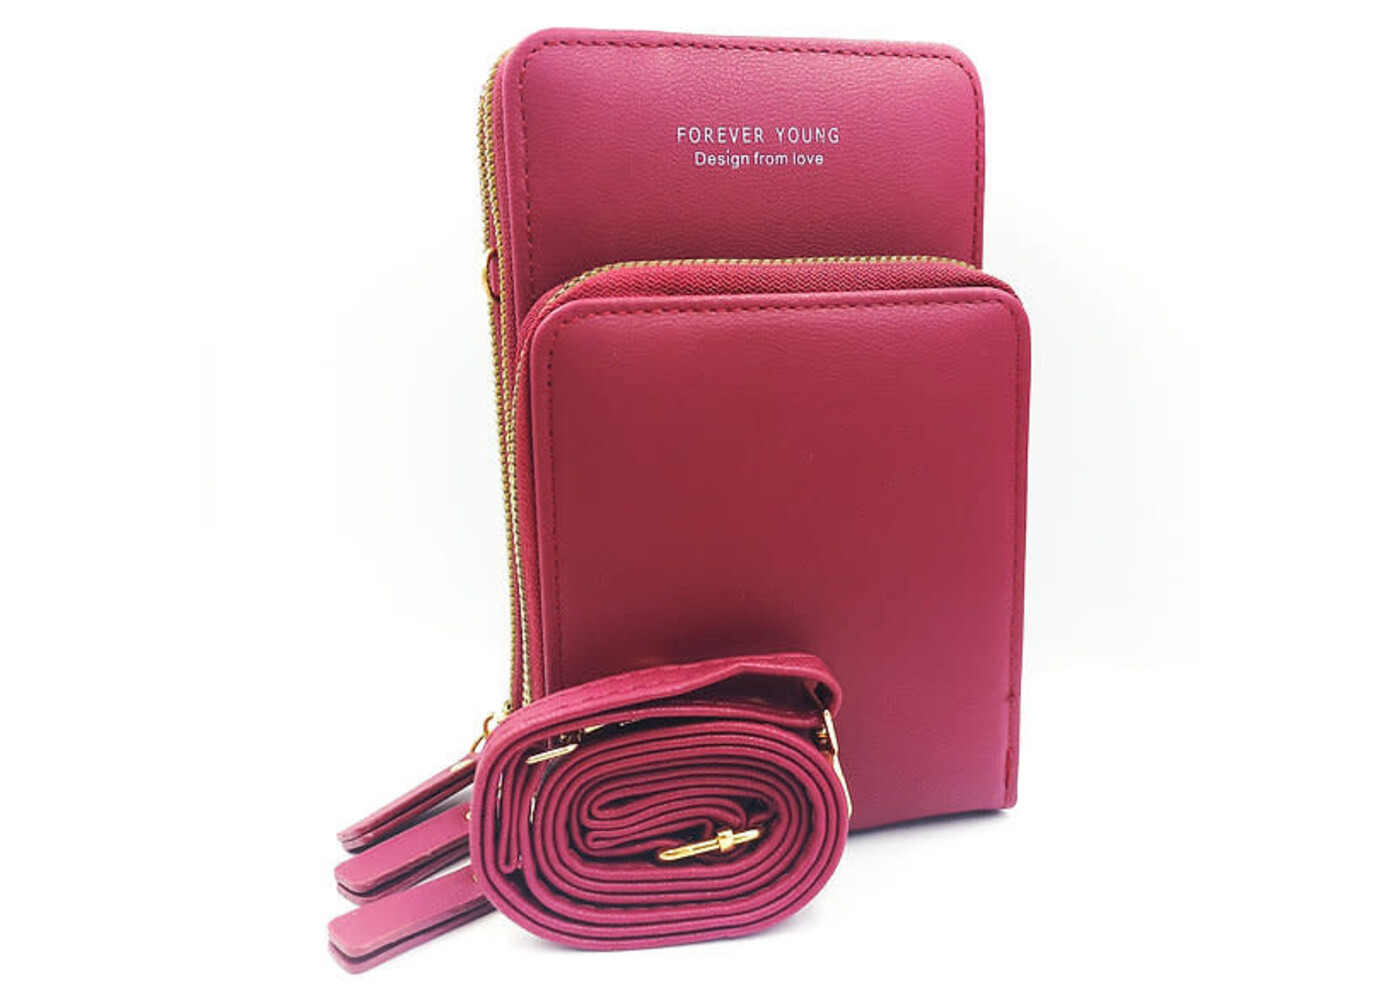 Zeneeba 3 zip crossover handbag